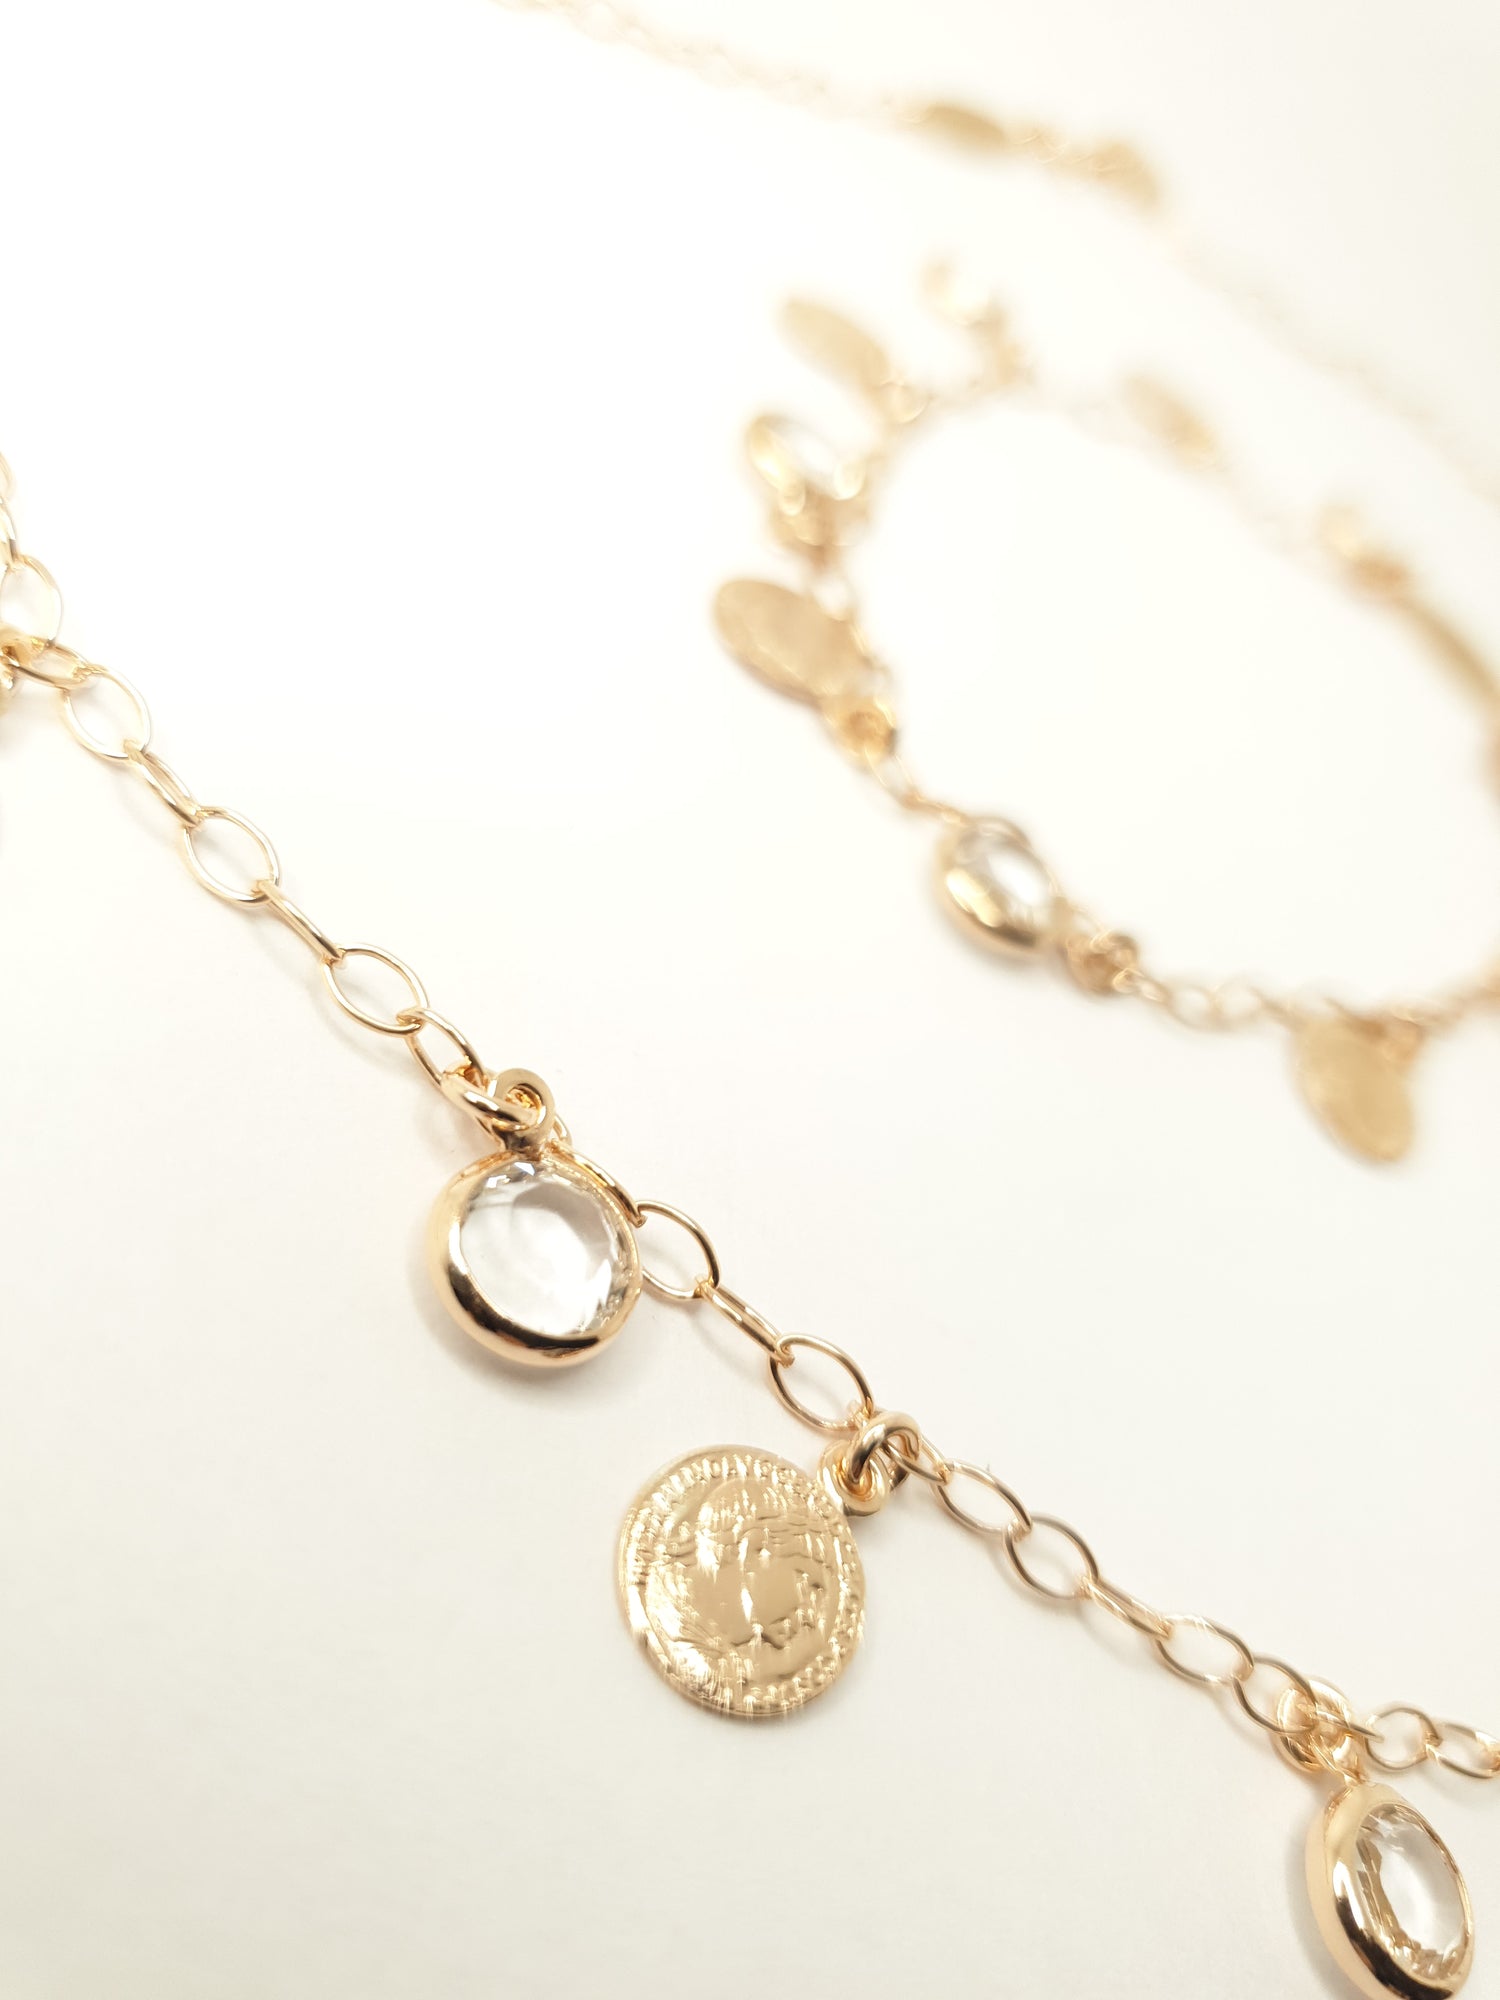 Moderne Kette aus 925 Silber mit 18k Vergoldung, funkelnden Swarovski Steinen und römischen Münzen mit Aphrodite-Abbildung. Ein zeitloser Blickfang mit modernem Chic für Ihren einzigartigen Stil.